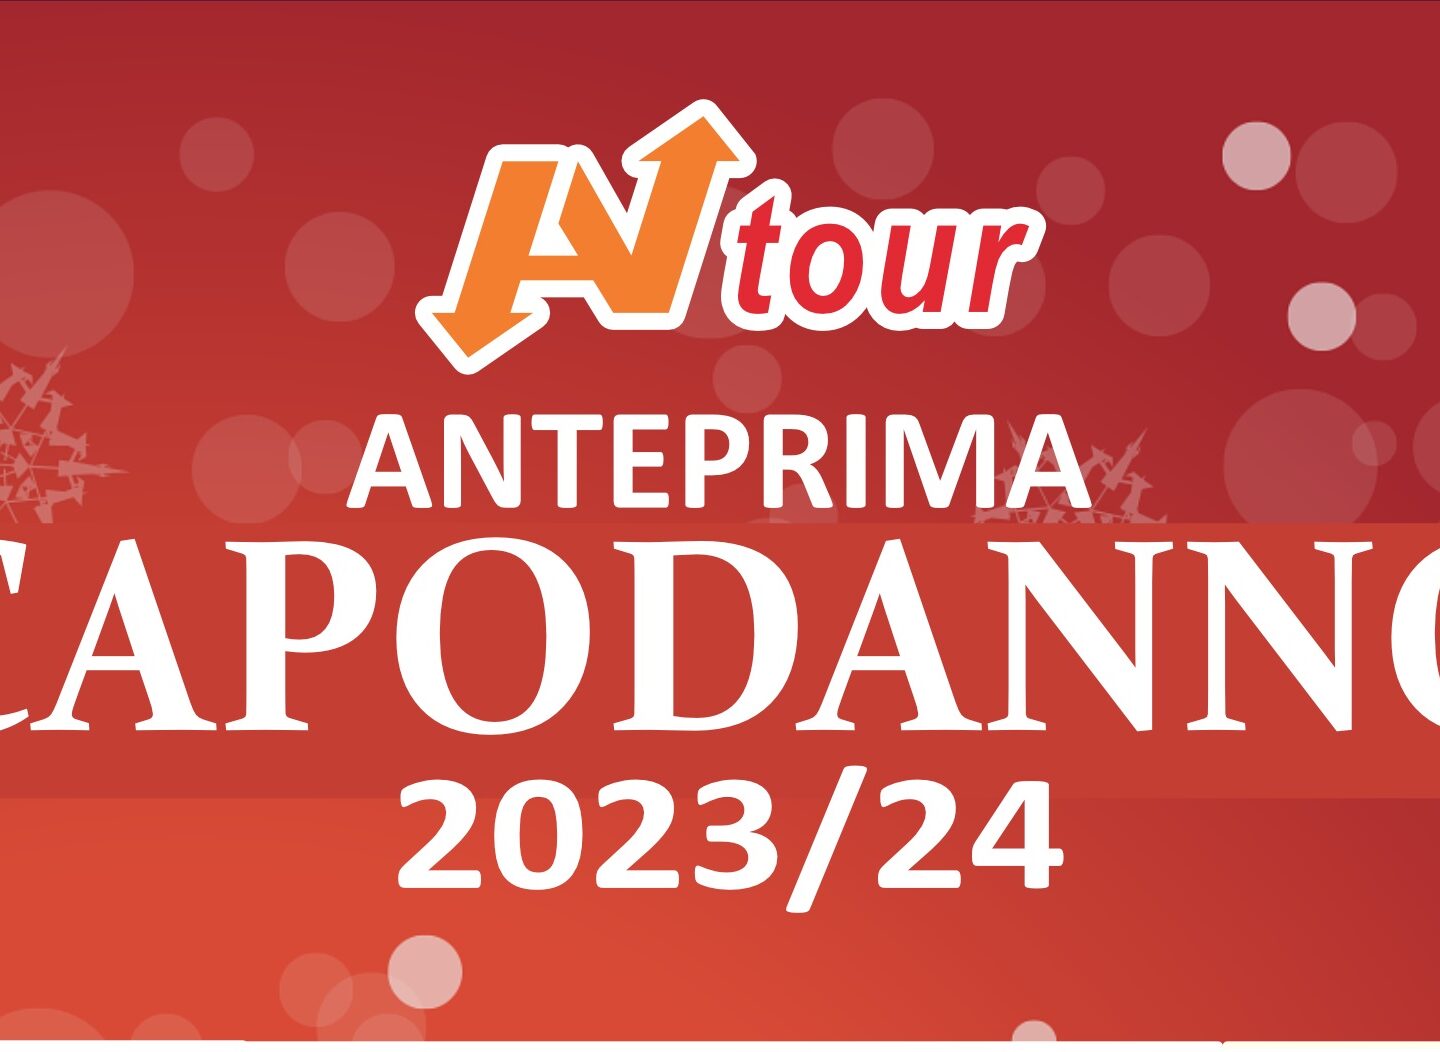 ANTEPRIME PONTI E CAPODANNO 2023/2024